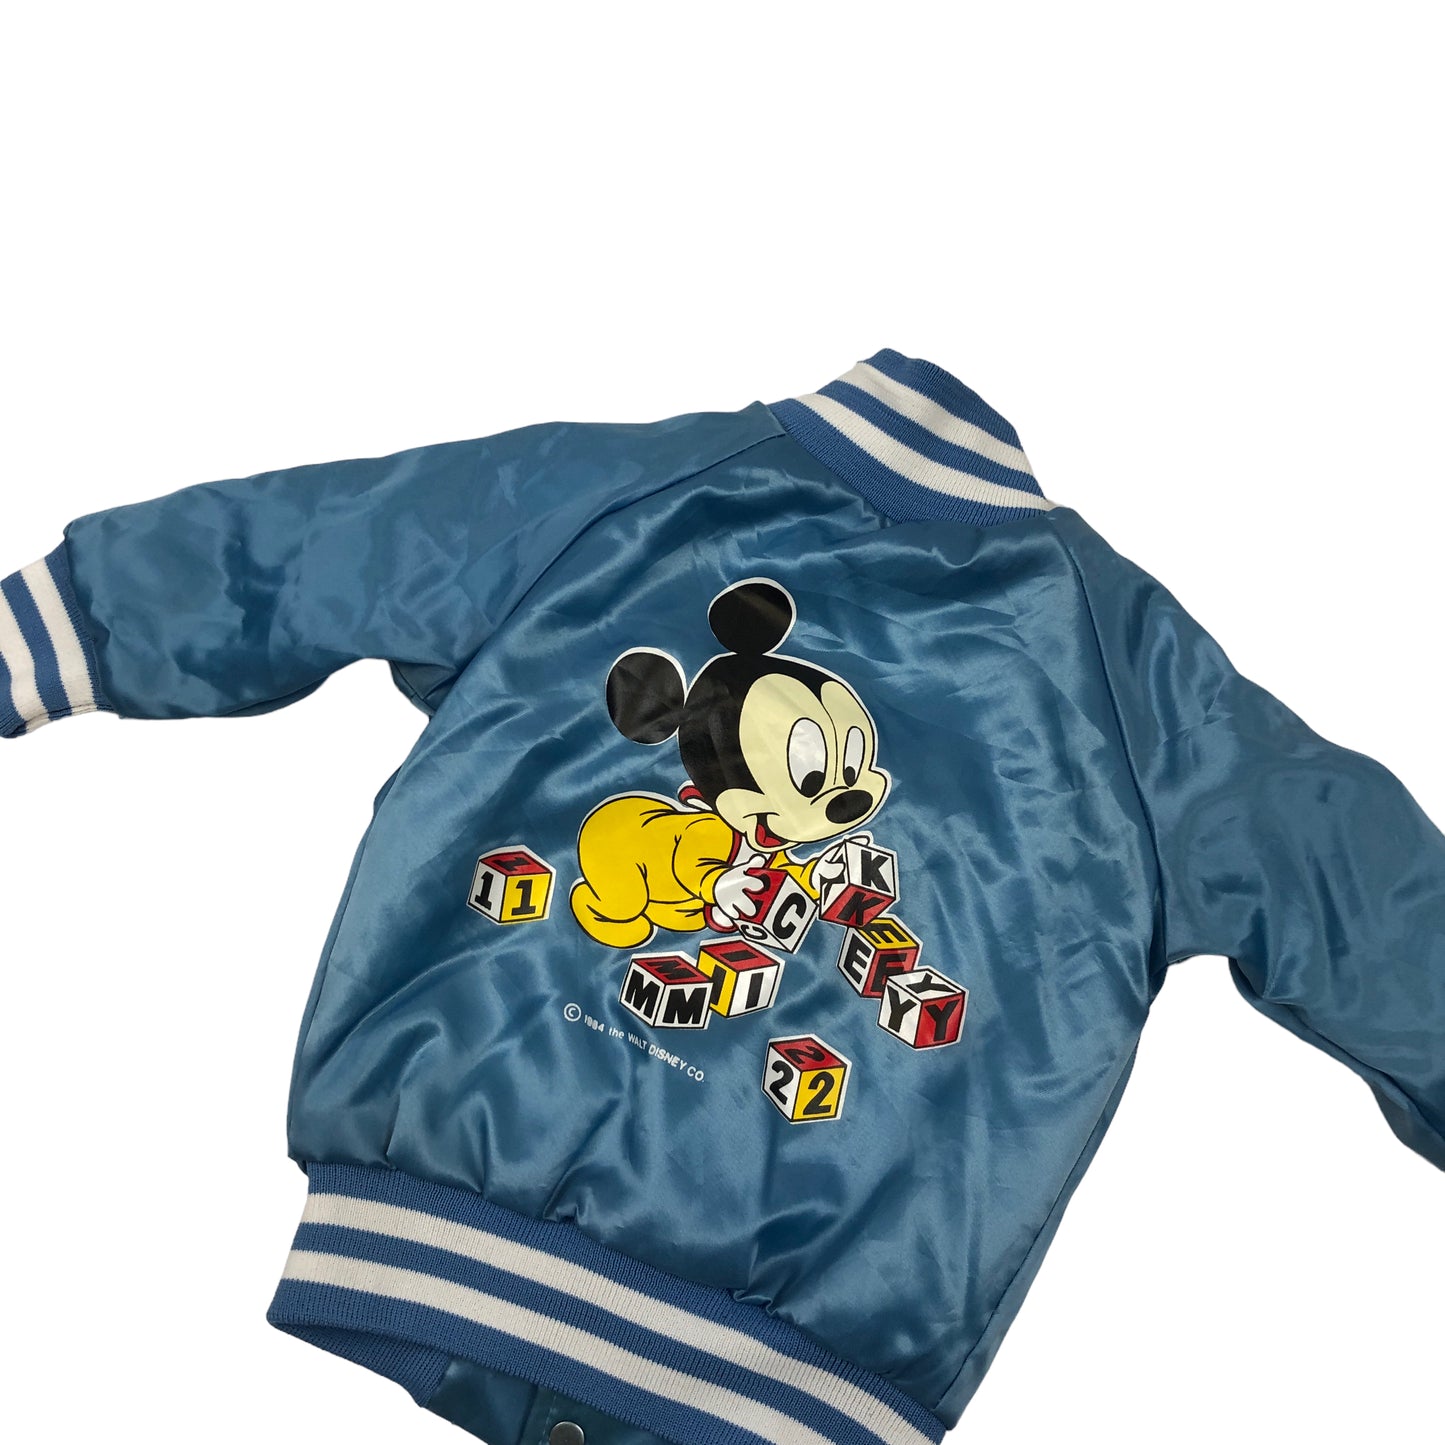 Vintage Disney Baseball Jacket (18mths)